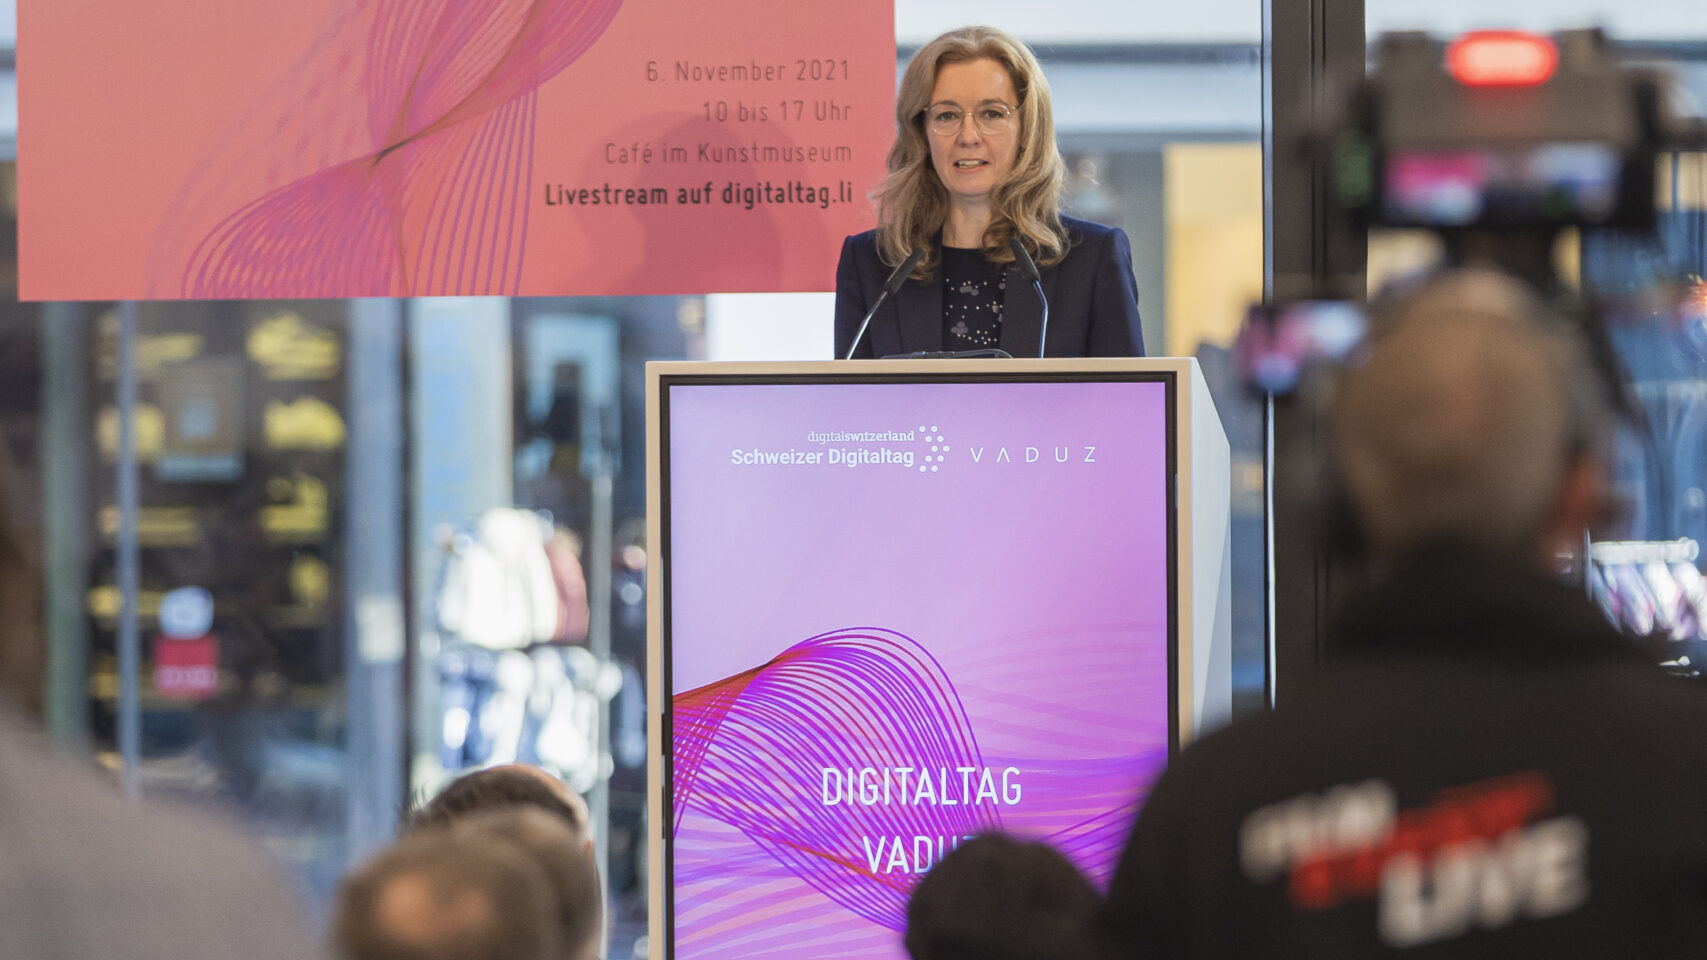 "Digitaltag Vaduz", jonka Liechtensteinin ruhtinaskunnan pääkaupungin taidemuseo toivotti tervetulleeksi lauantaina 6. marraskuuta 2021, herätti yleisön ja puhujien innostusta seuraavan päivän 10. päivän "Sveitsin digitaalipäivän" kanssa: varapääministerin Sabine Mounaniin puhe.